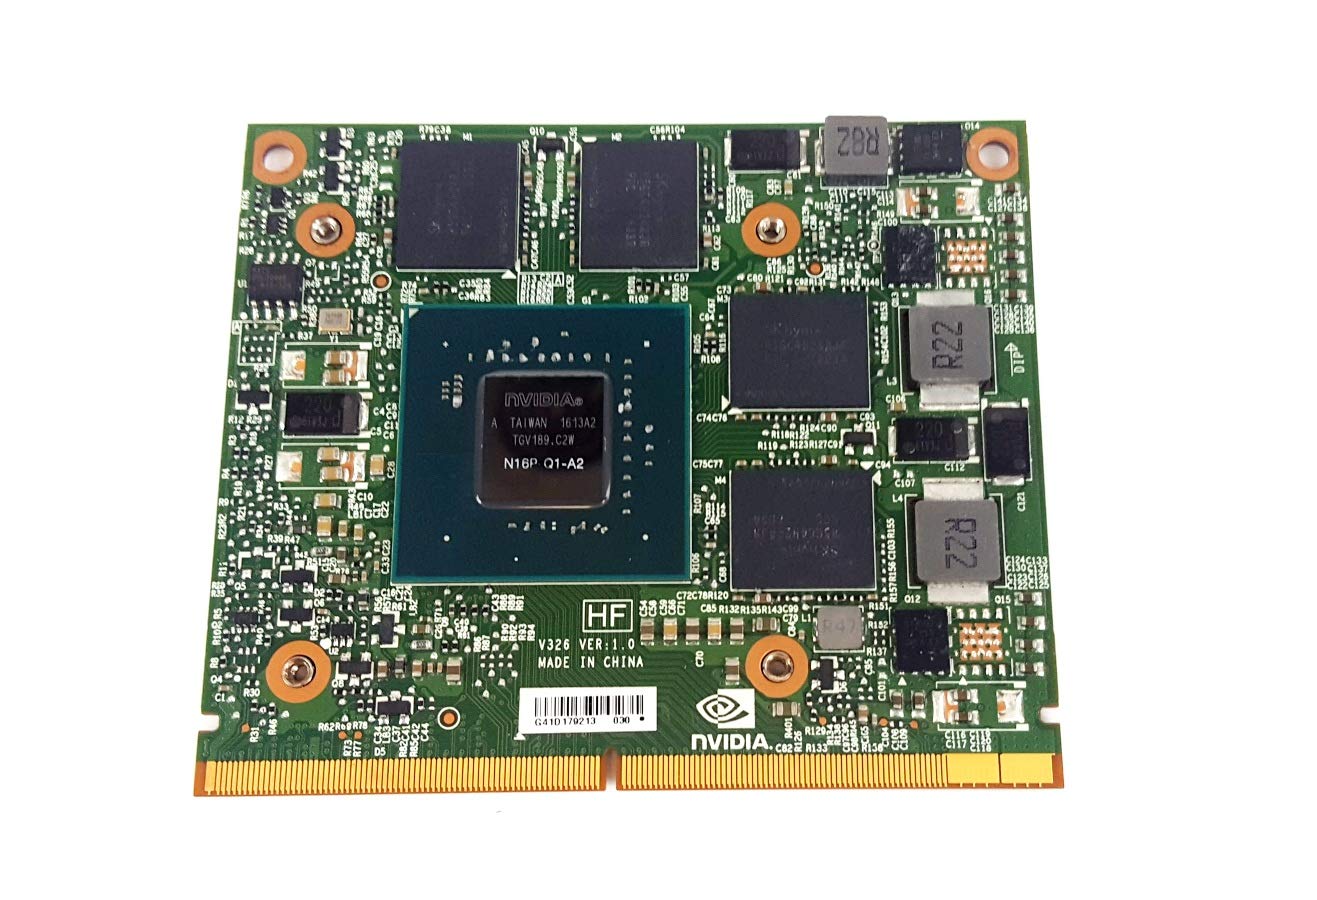 デル Dell Precision 7510 nVIDIA Quadro M1000M N16P Q1-A2 2GB Gpu ビデオカード 2PNW4 送料無料